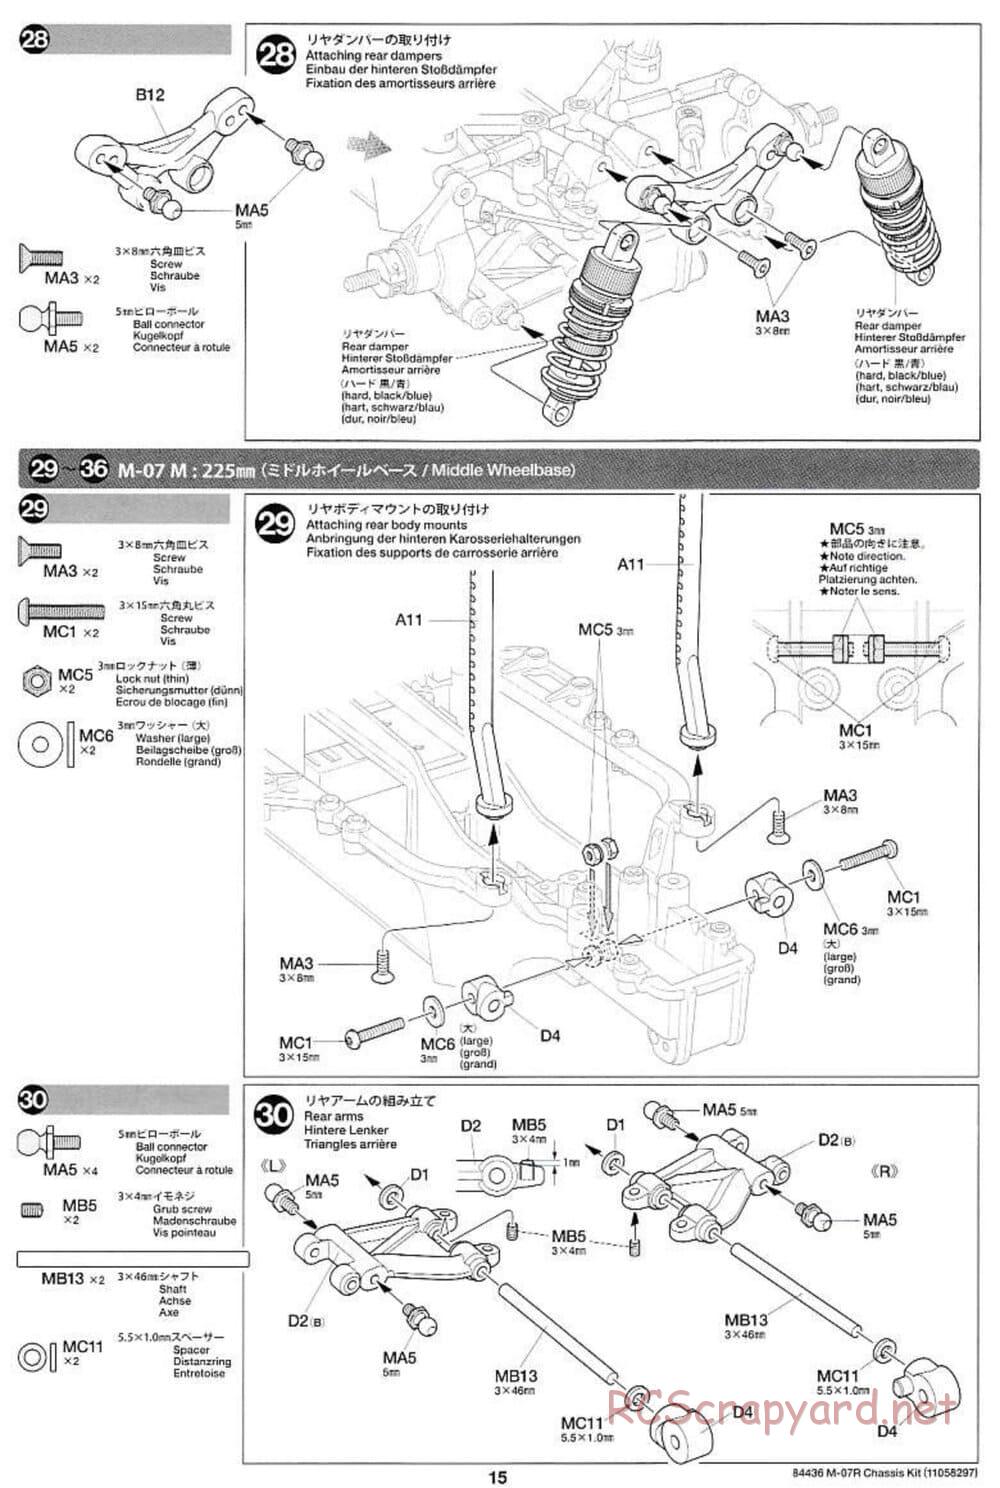 Tamiya - M-07R Chassis - Manual - Page 15